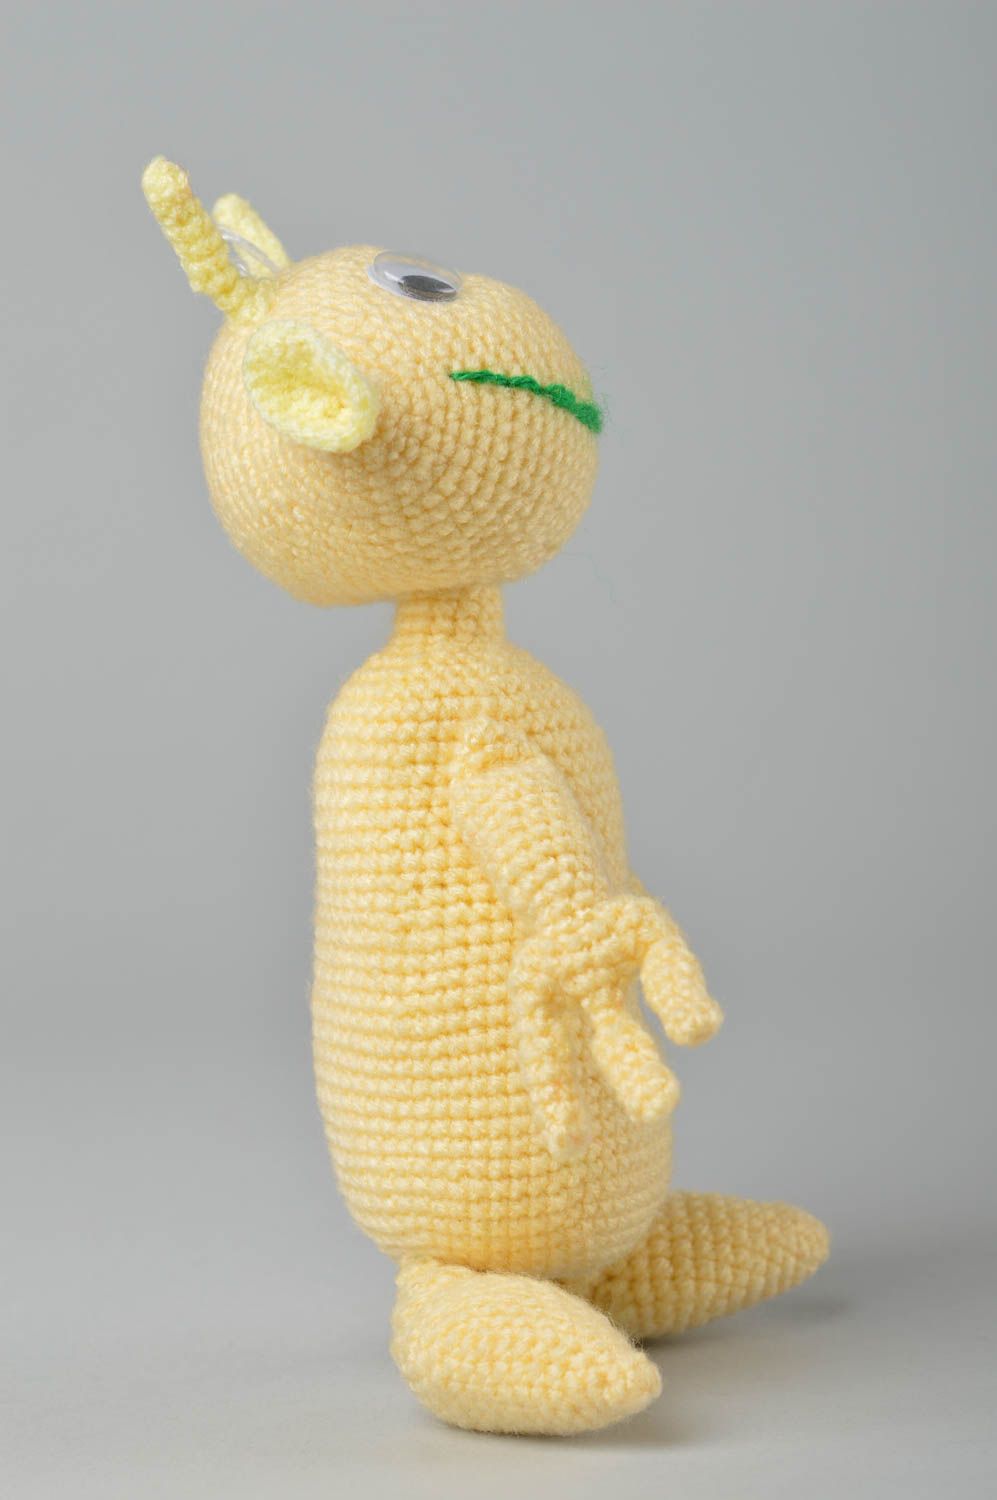 Handmade crocheted toys creative toys for children stylish toys nursery decor photo 3